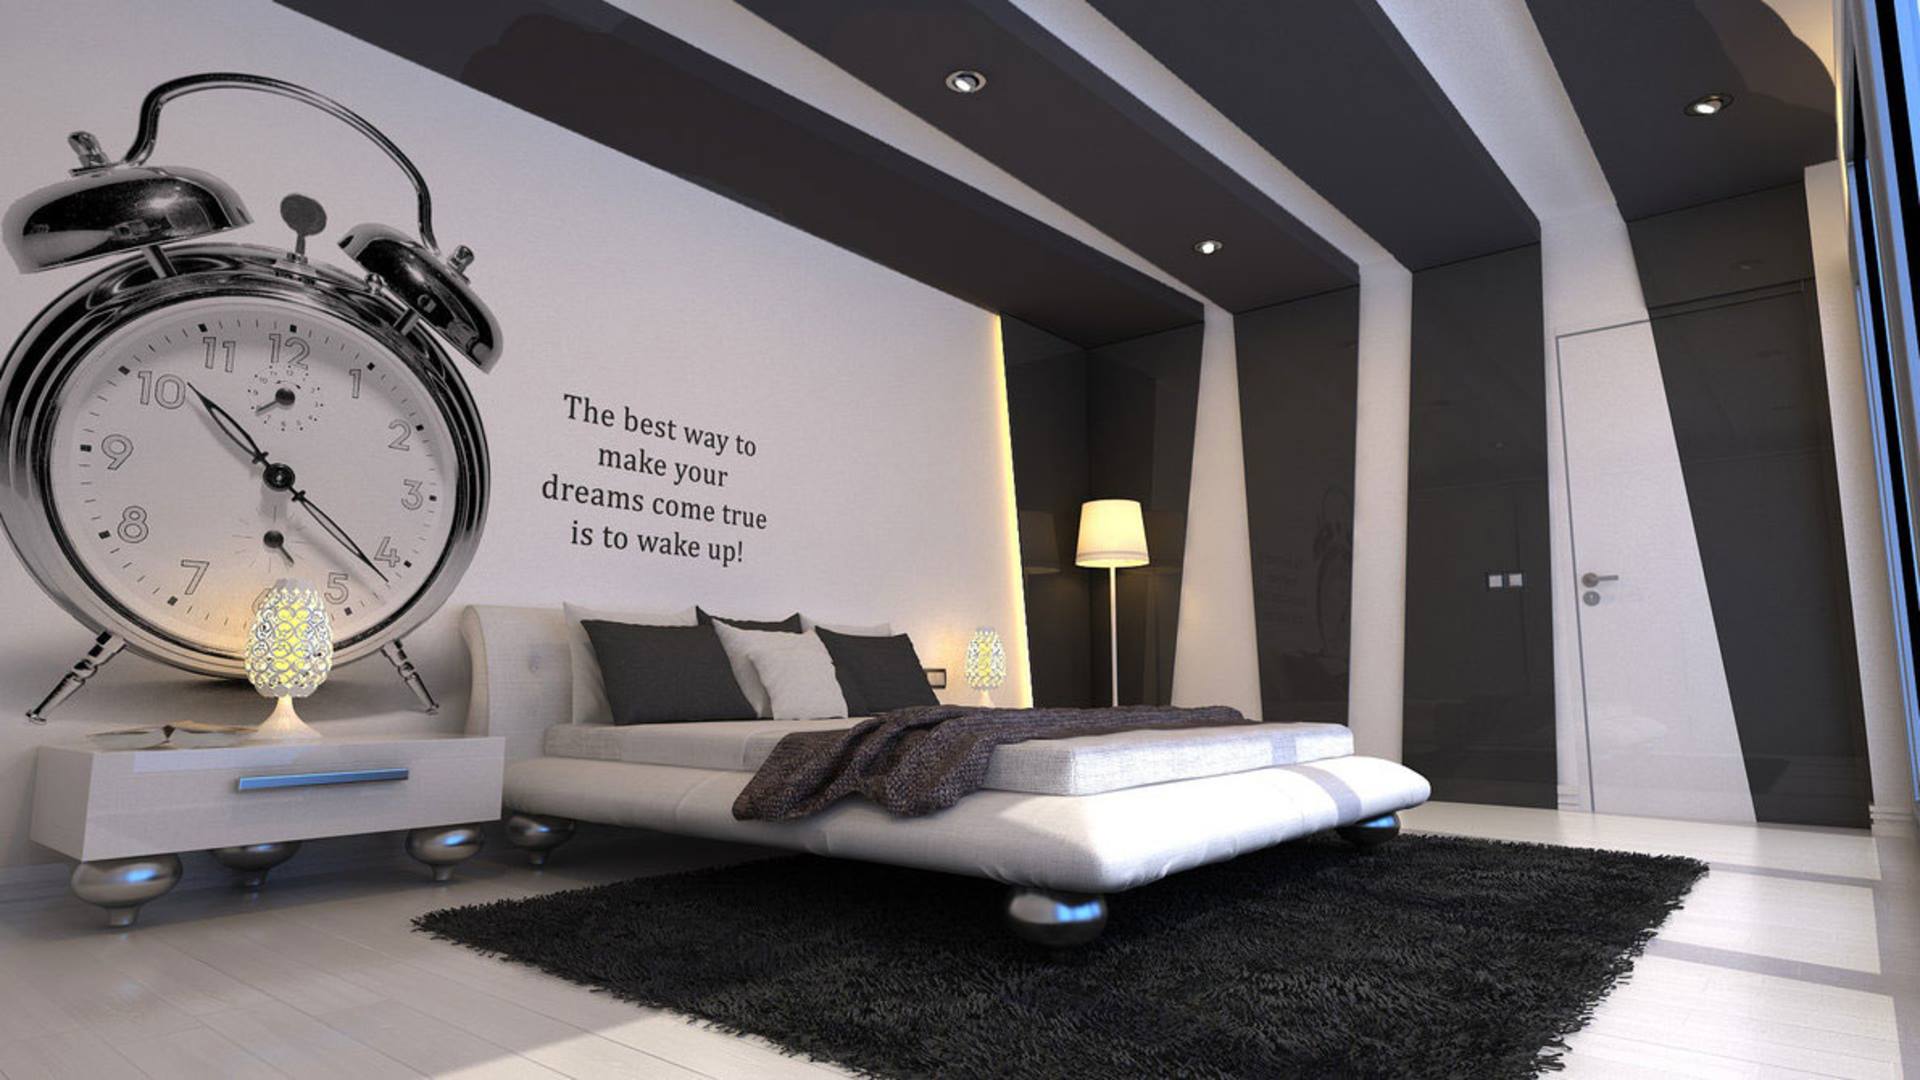 Your dream. Креативная спальня. Часы в интерьере спальни. Спальня в современном стиле креатив. Креативные обои в спальню.